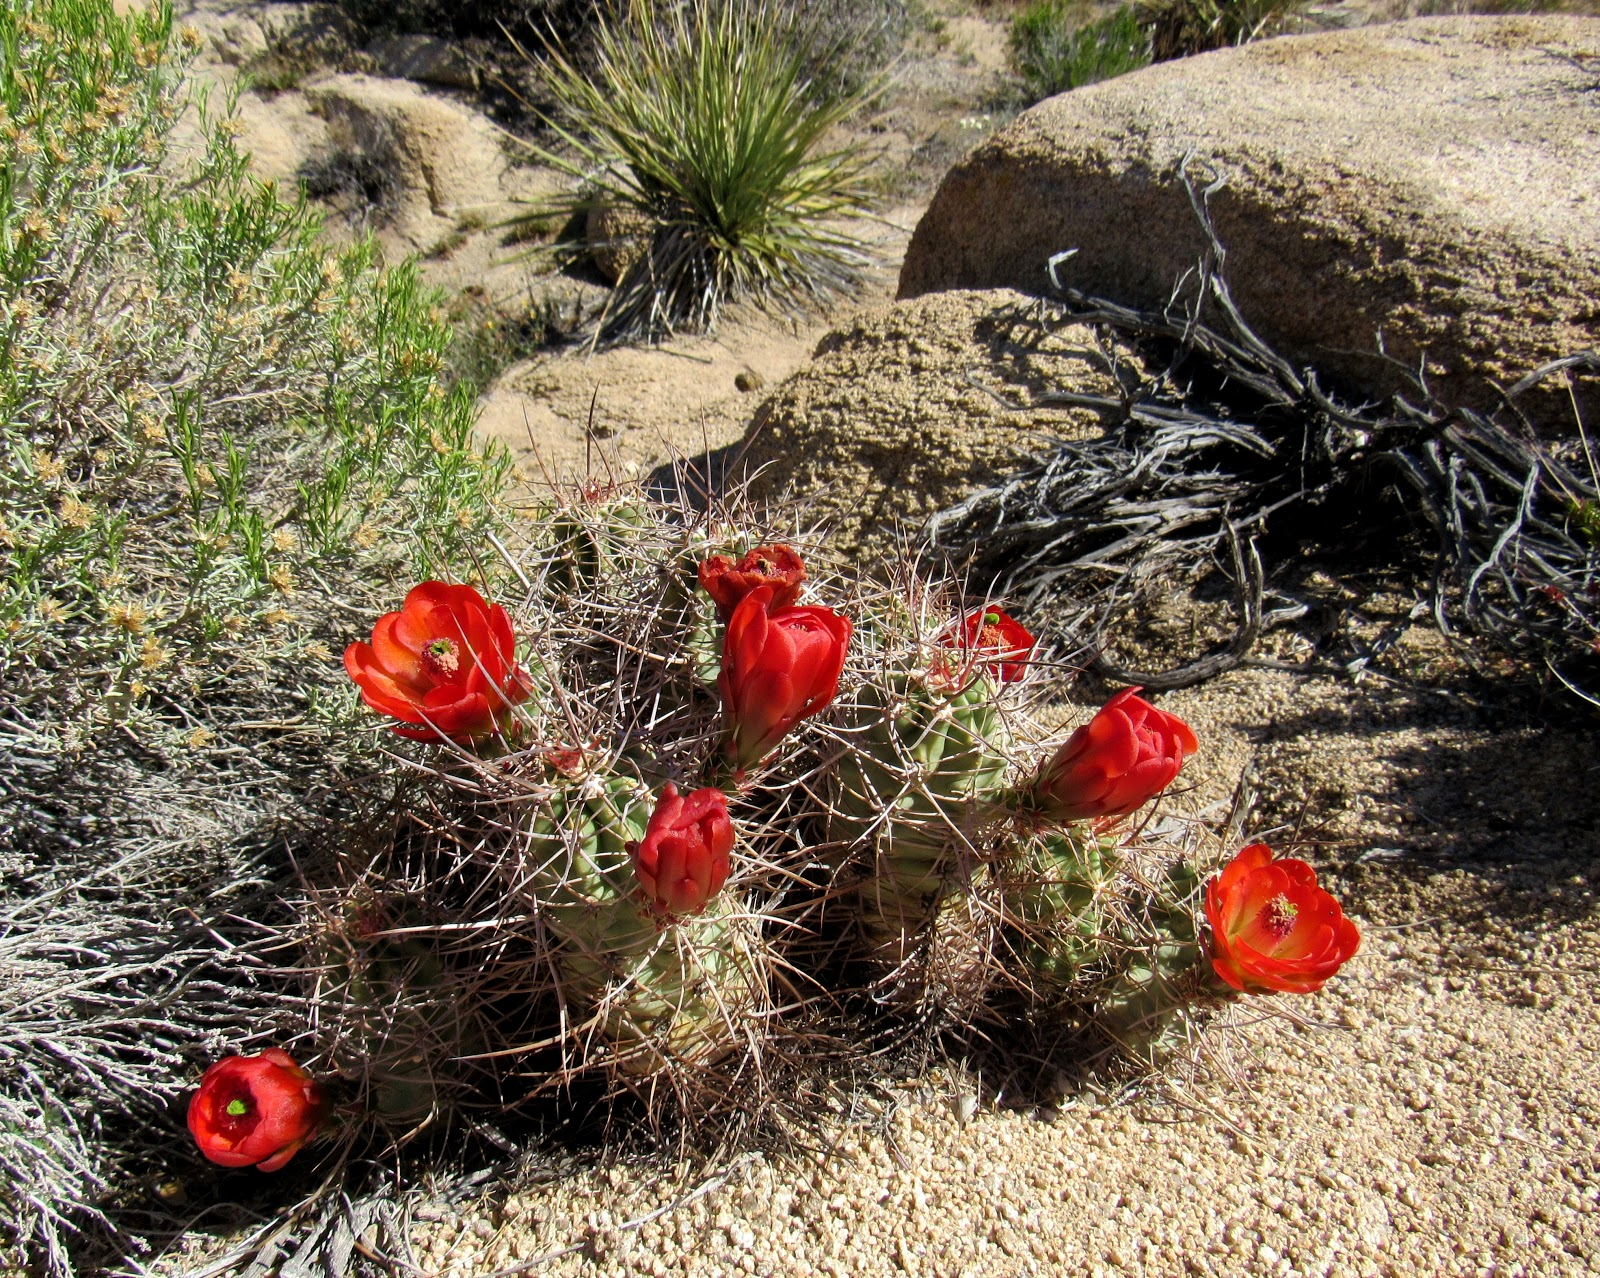 A kingcup cactus. 